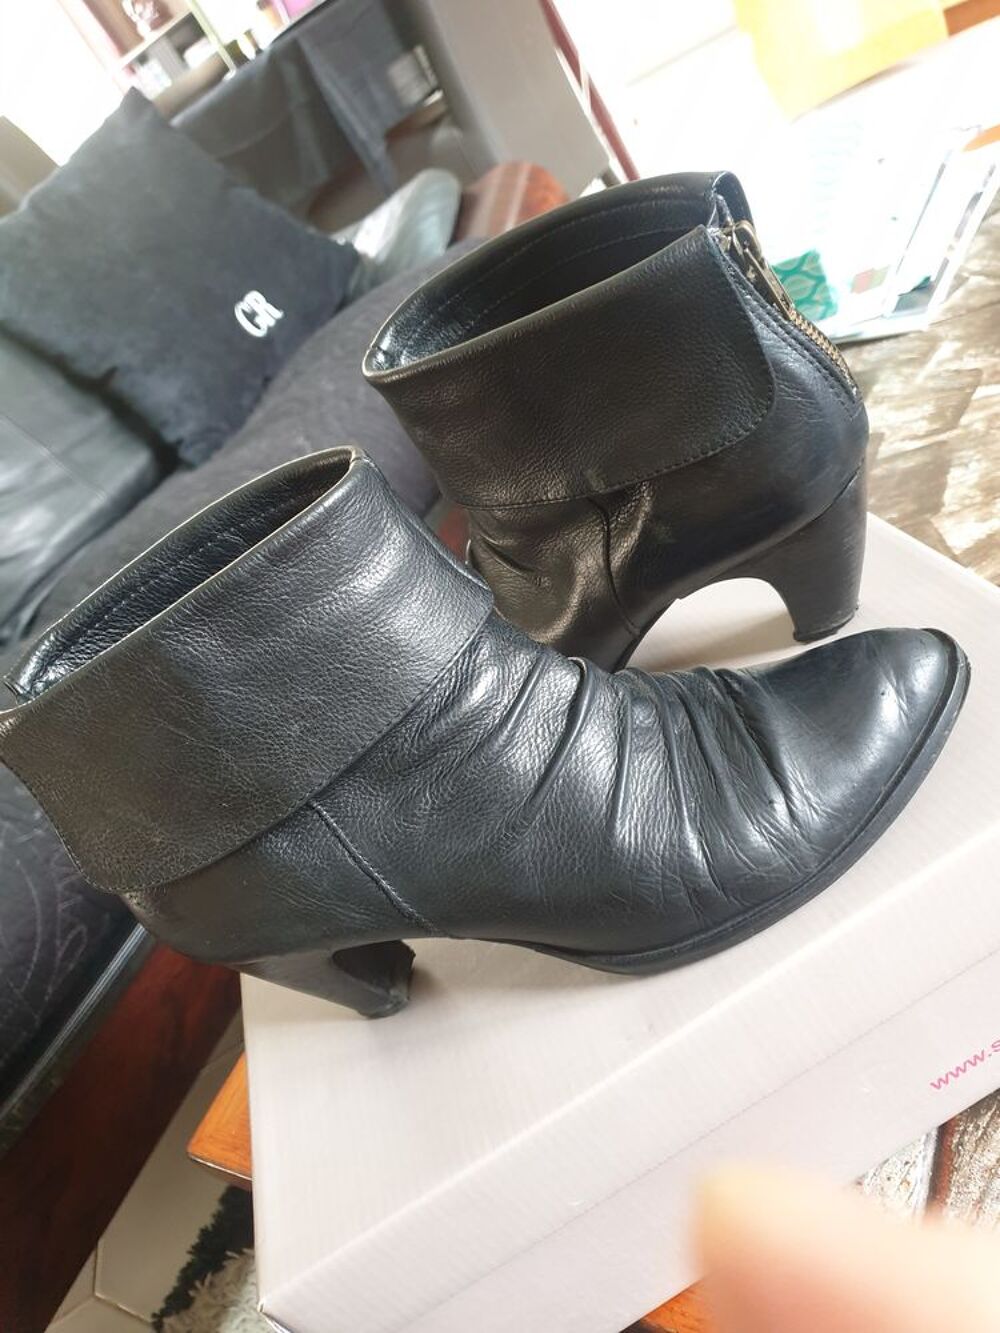 Boots San Marina noir, cuir &quot;veau&quot; uni grain&eacute;,T39, talon 7cm Chaussures